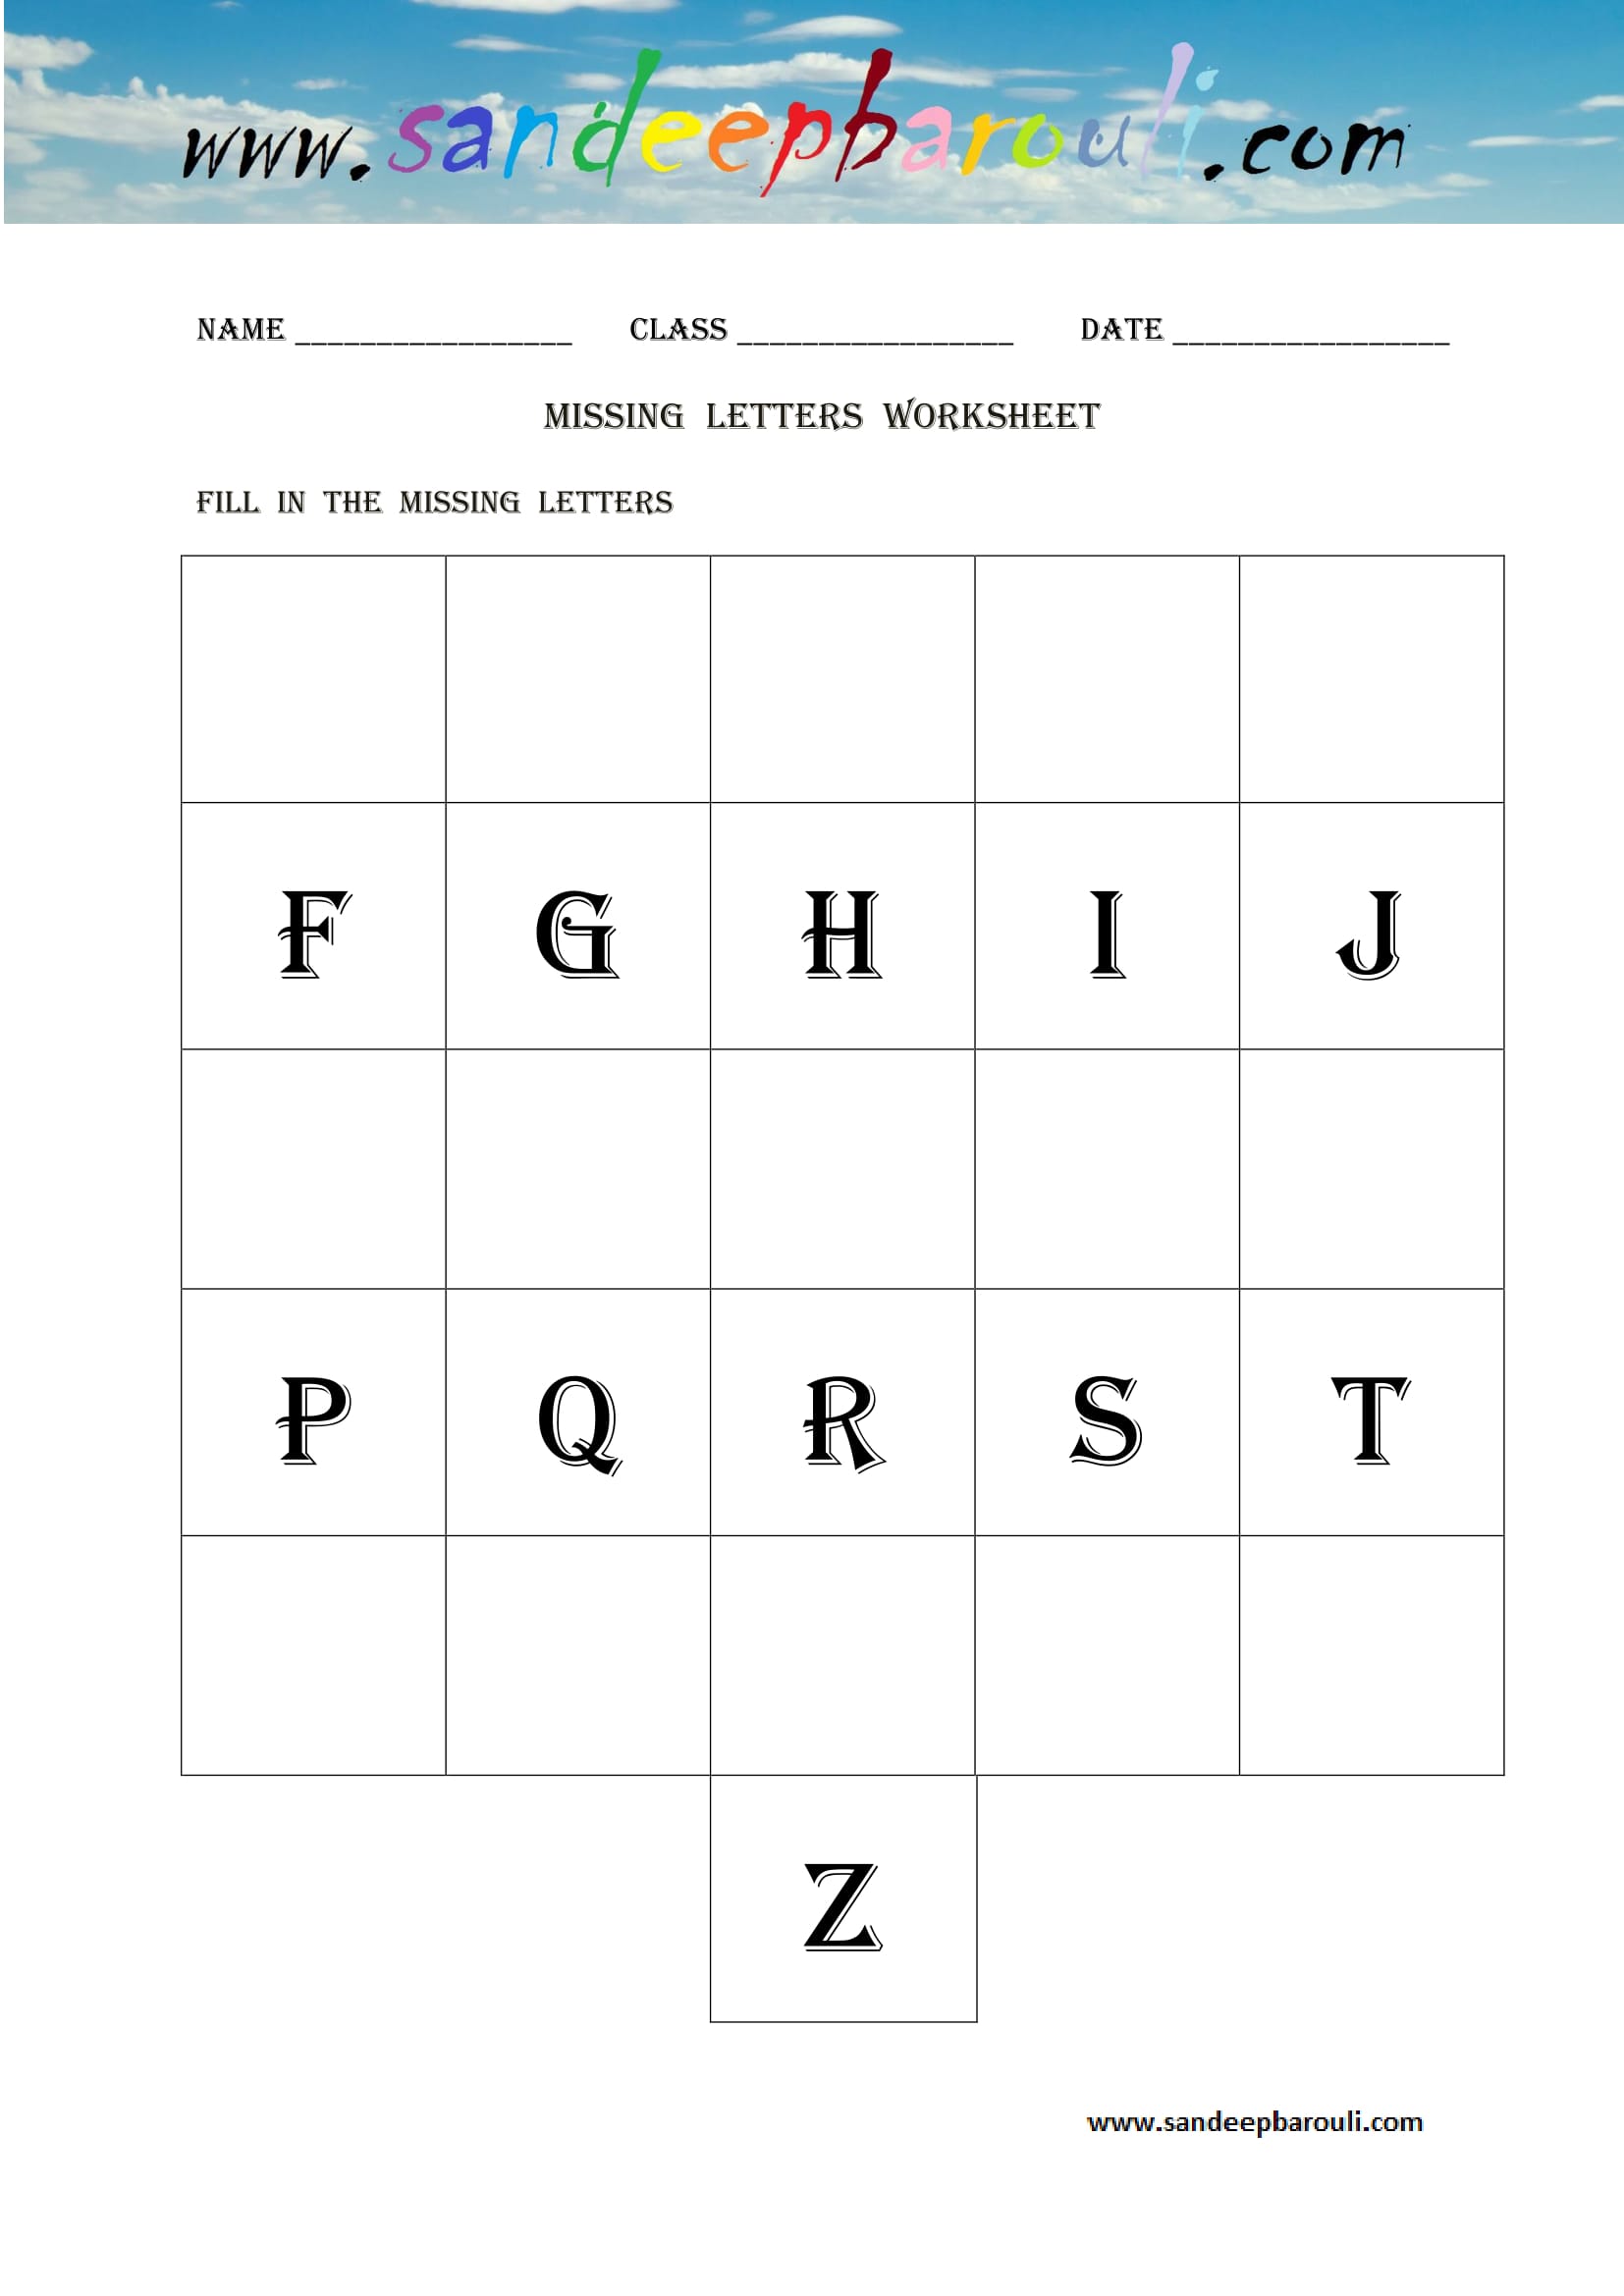 Missing letters Worksheet (11)